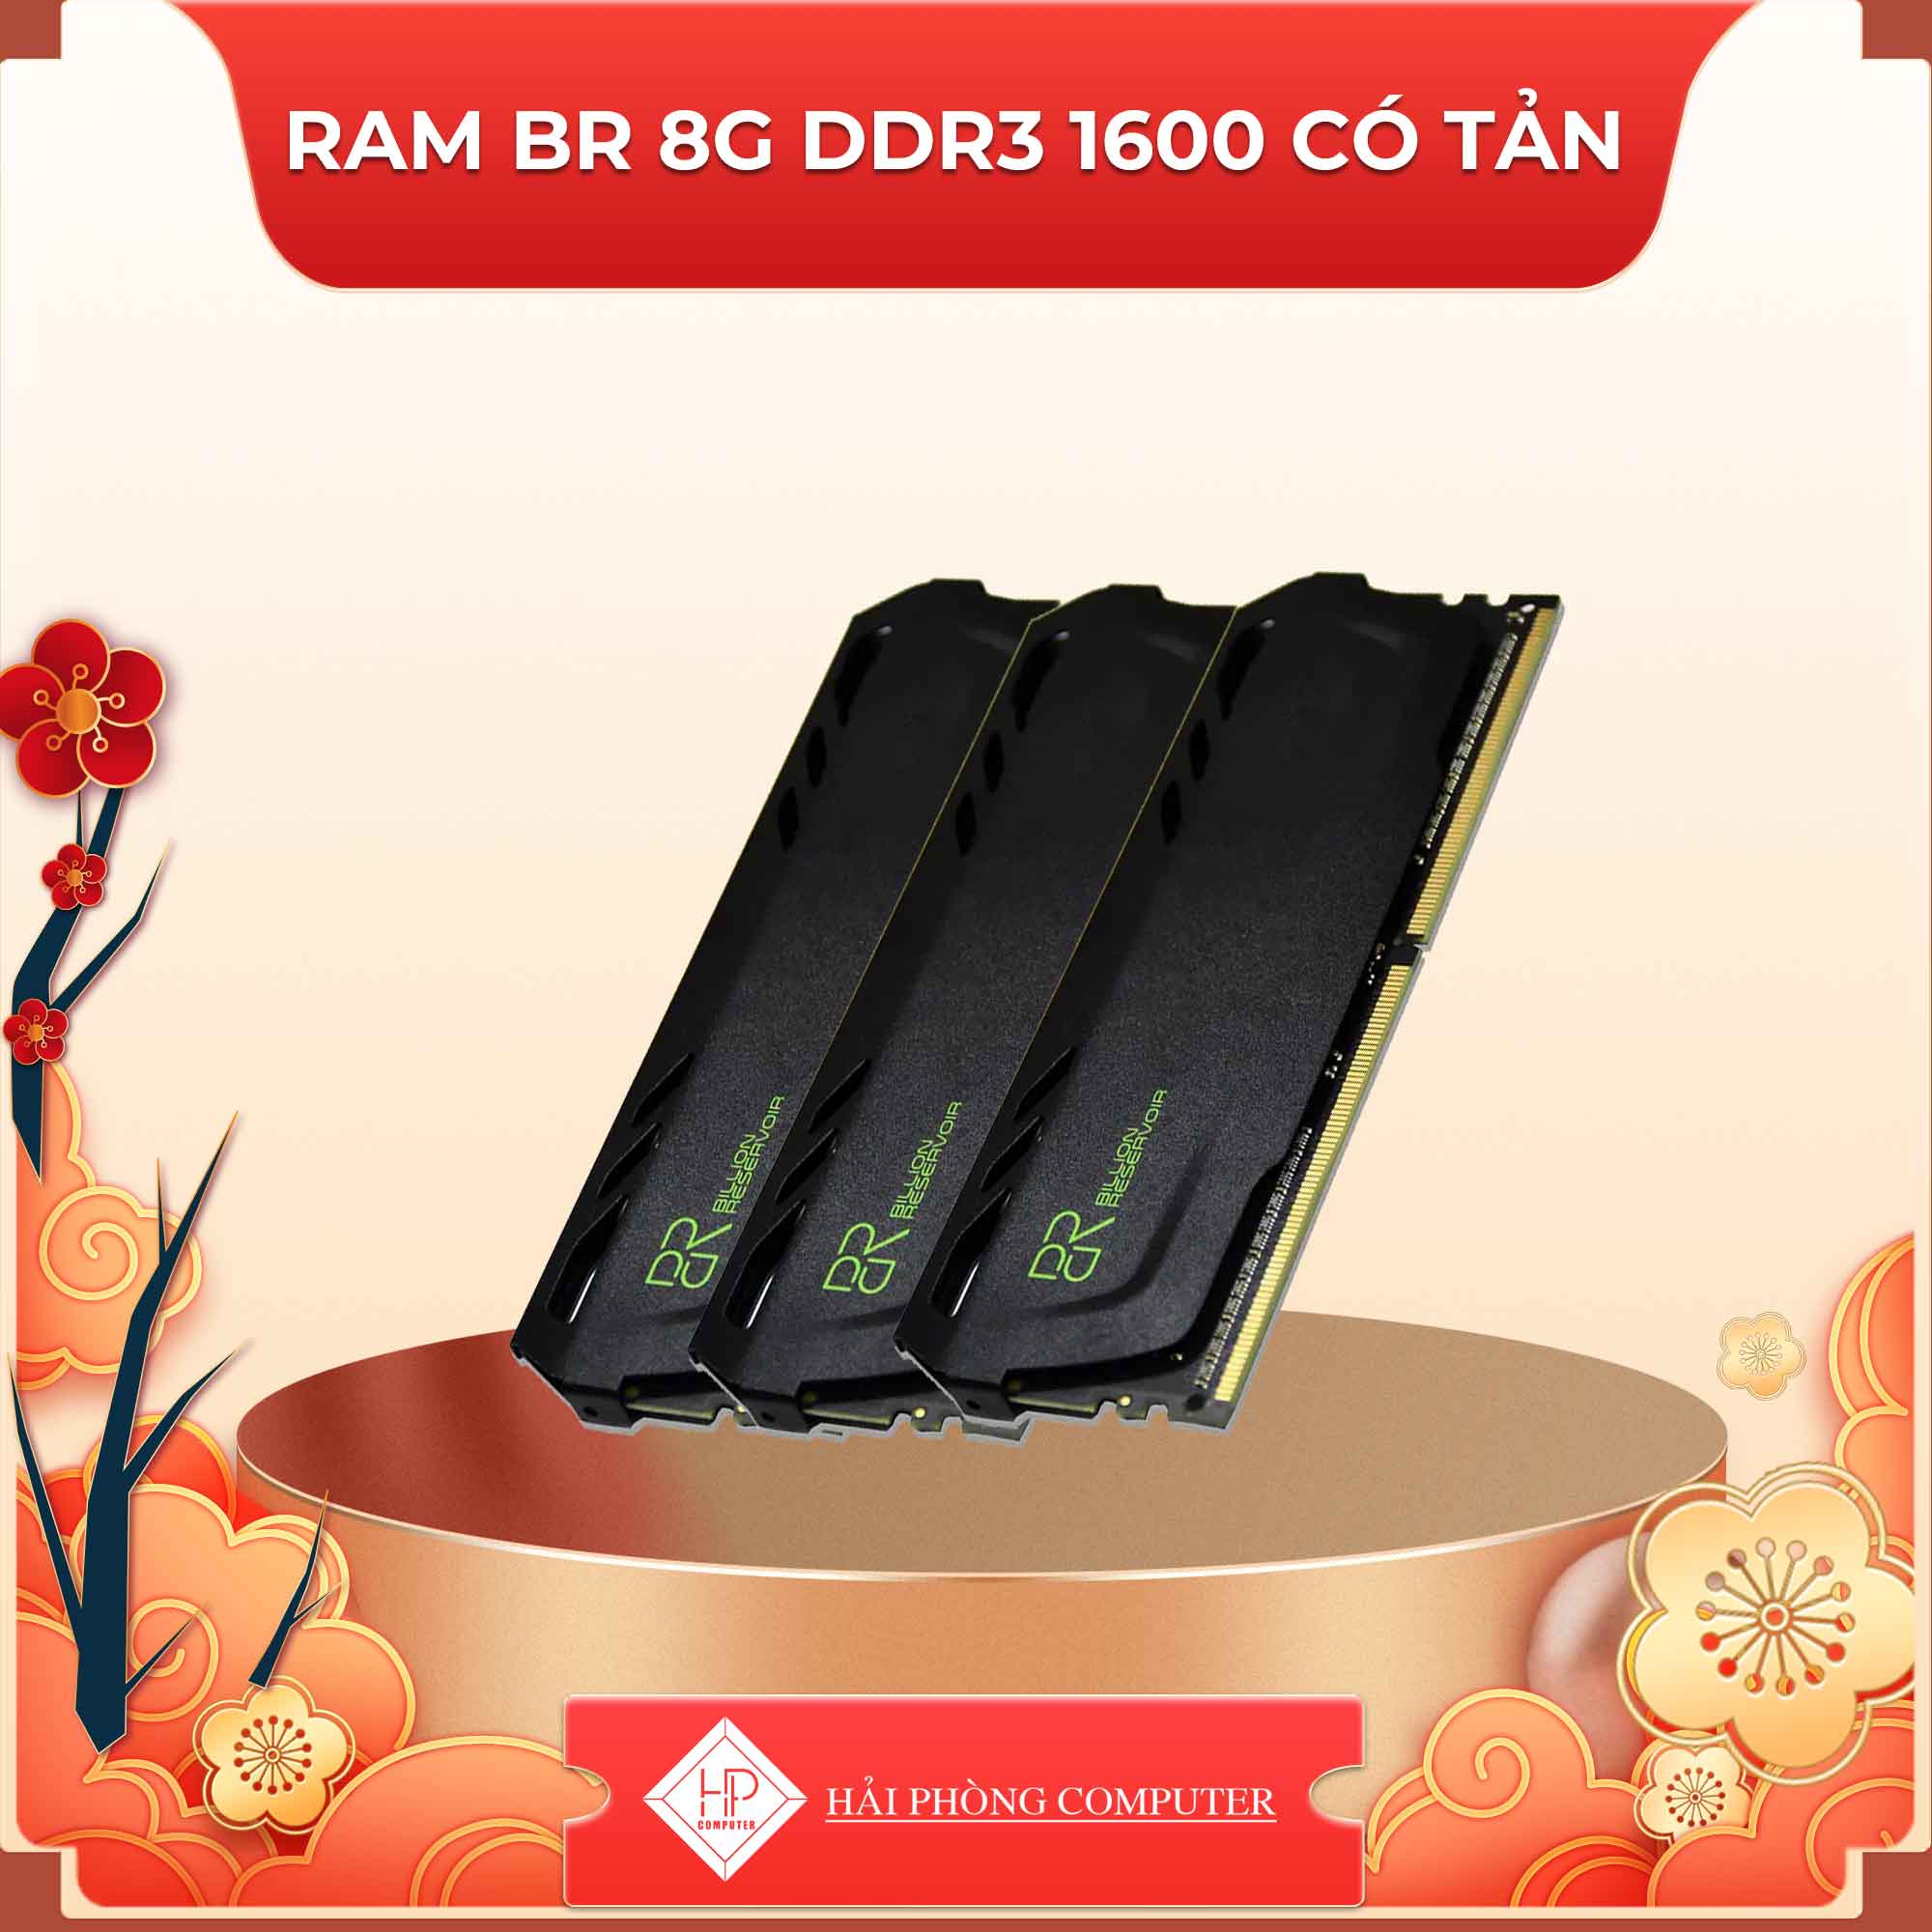 RAM BR 8G DDR3 1600 Có Tản